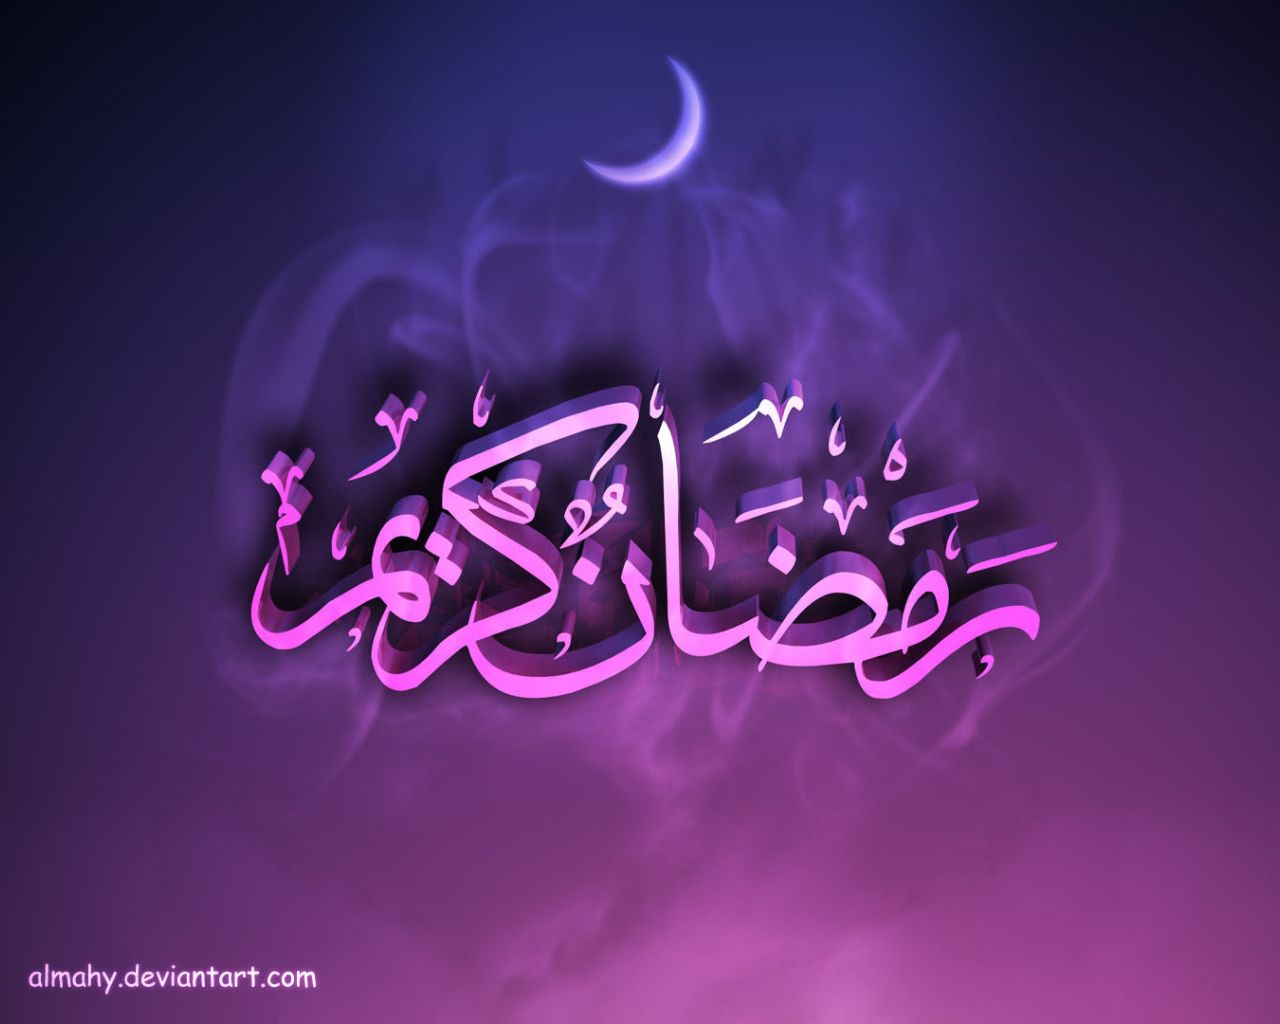 Best Ramadan 2014